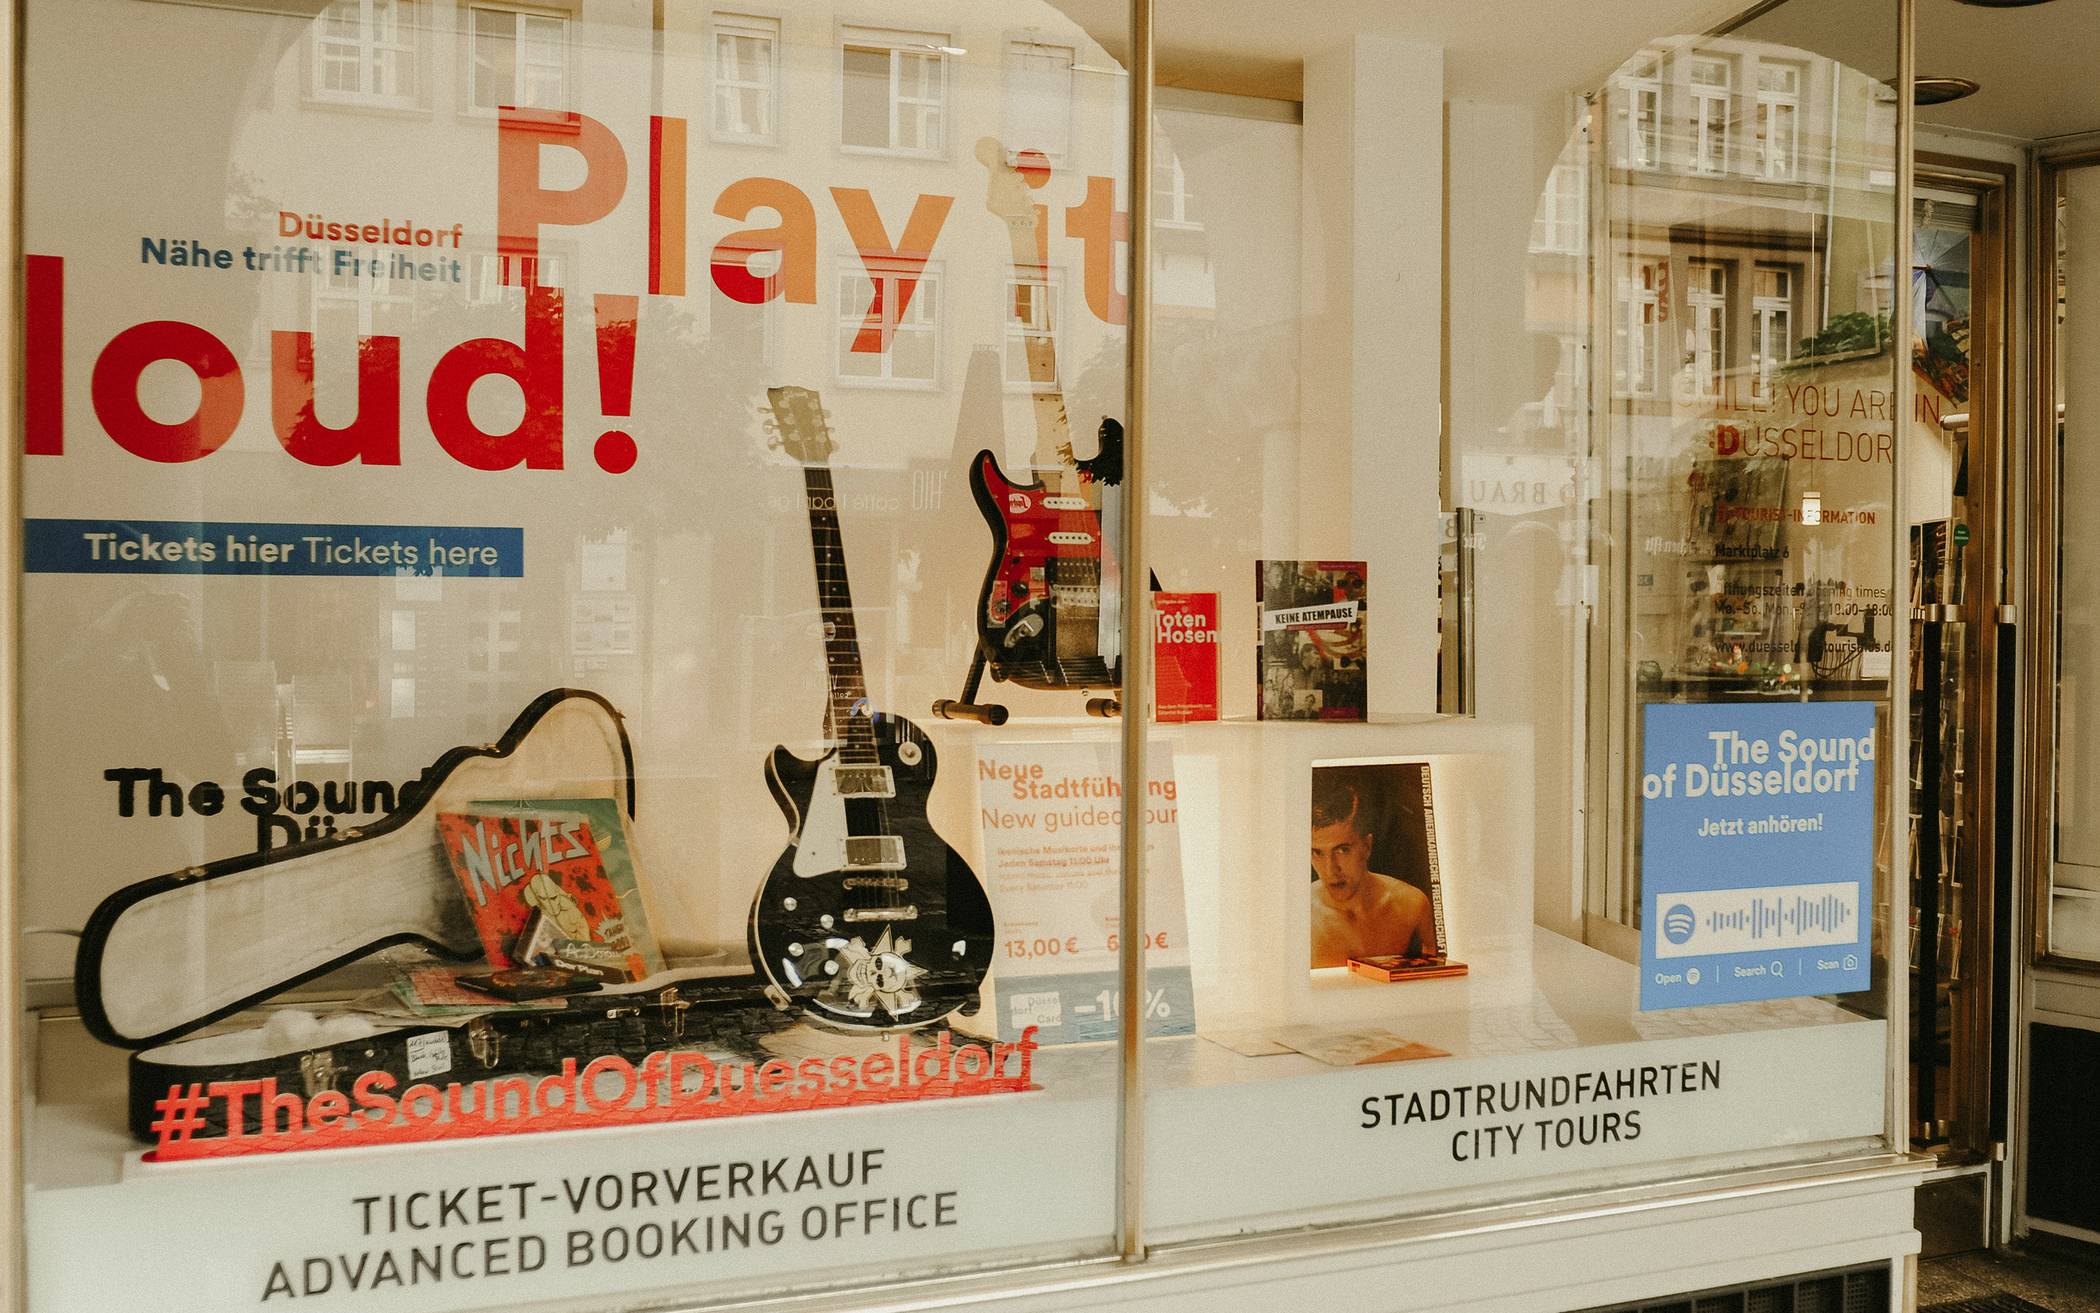  Düsseldorfer Musik - die bisweilen auch internationalen Ruhm genießt - in Hülle und Fülle: Neben zwei Gitarren von Hosen-Gitarrist Kuddel zieren auch zahlreiche Platten, Singles und CDs aus der Düsseldorfer Schmiede das Schaufenster der Düsseldorf Tourismus in der Altstadt. 